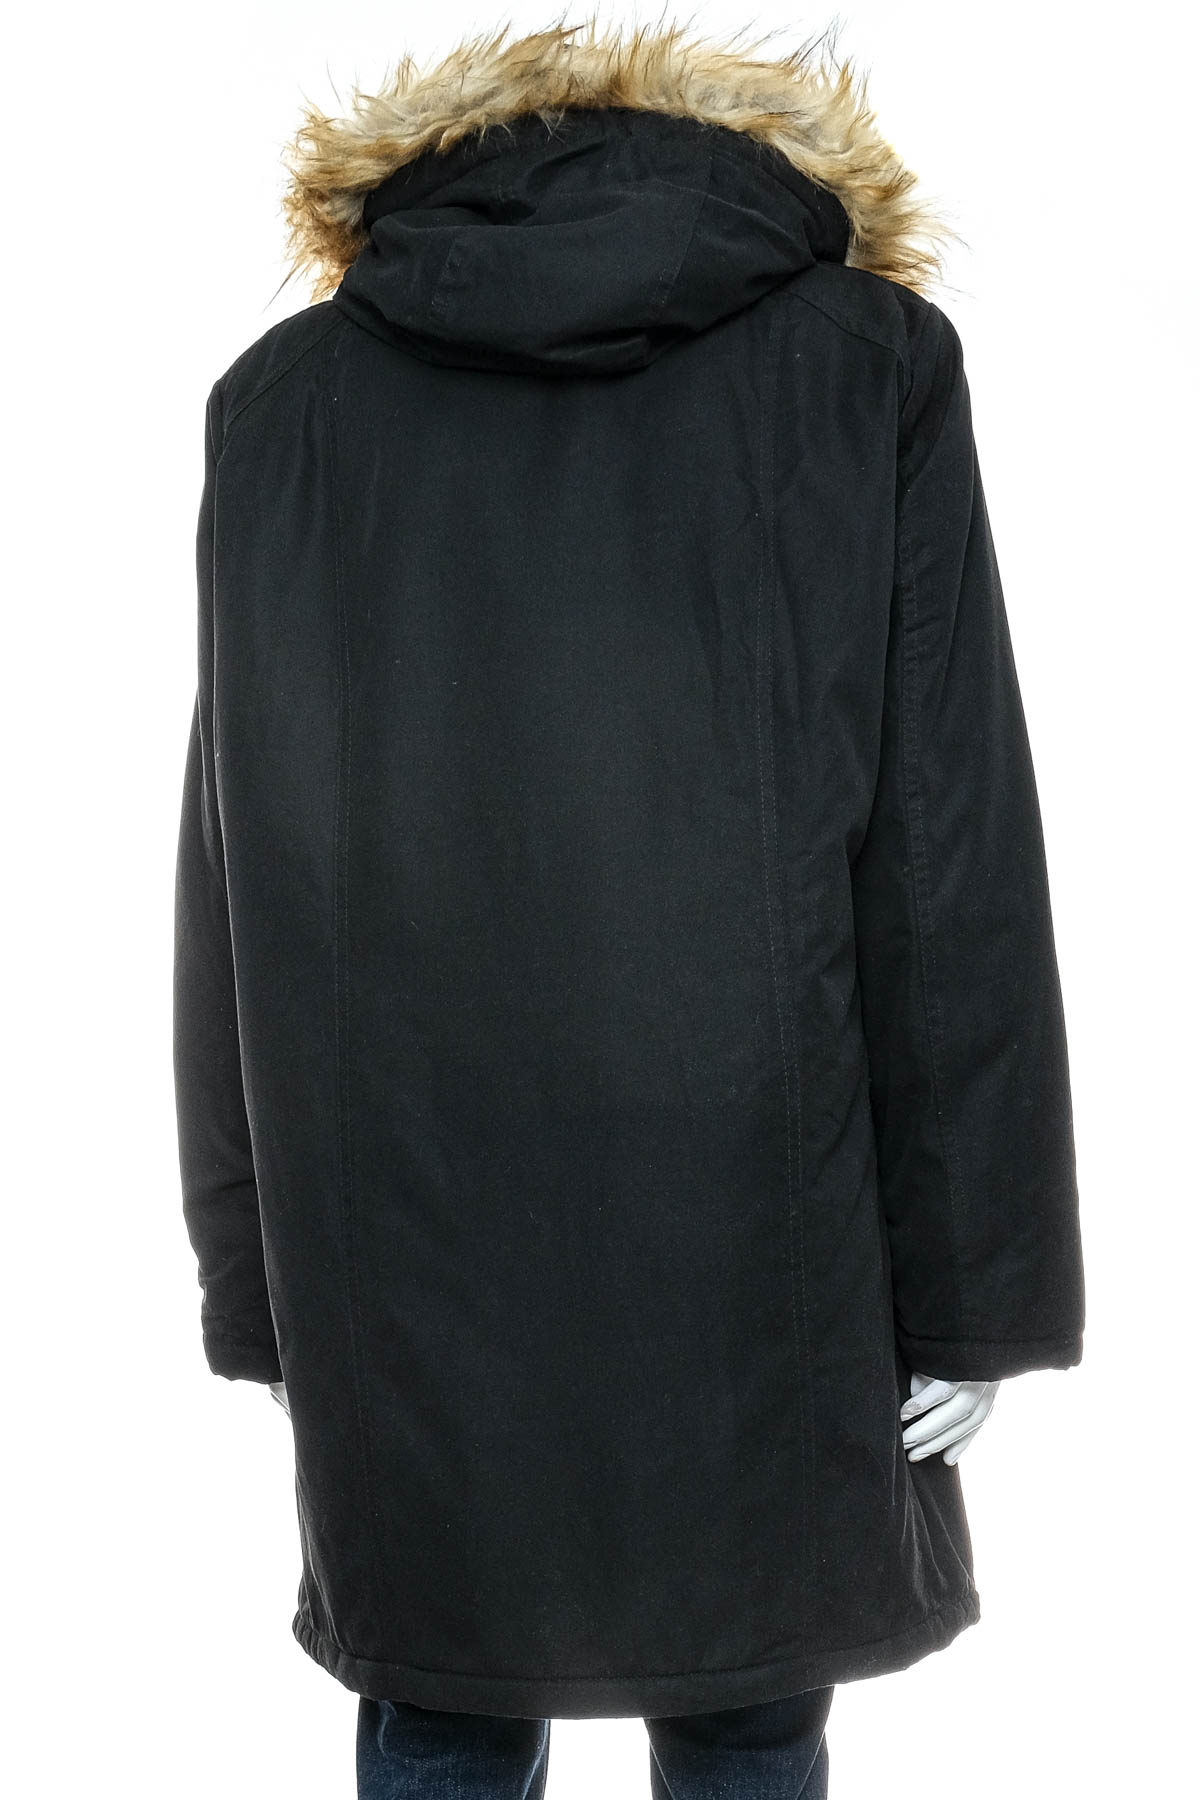 Female jacket - Esmara - 1